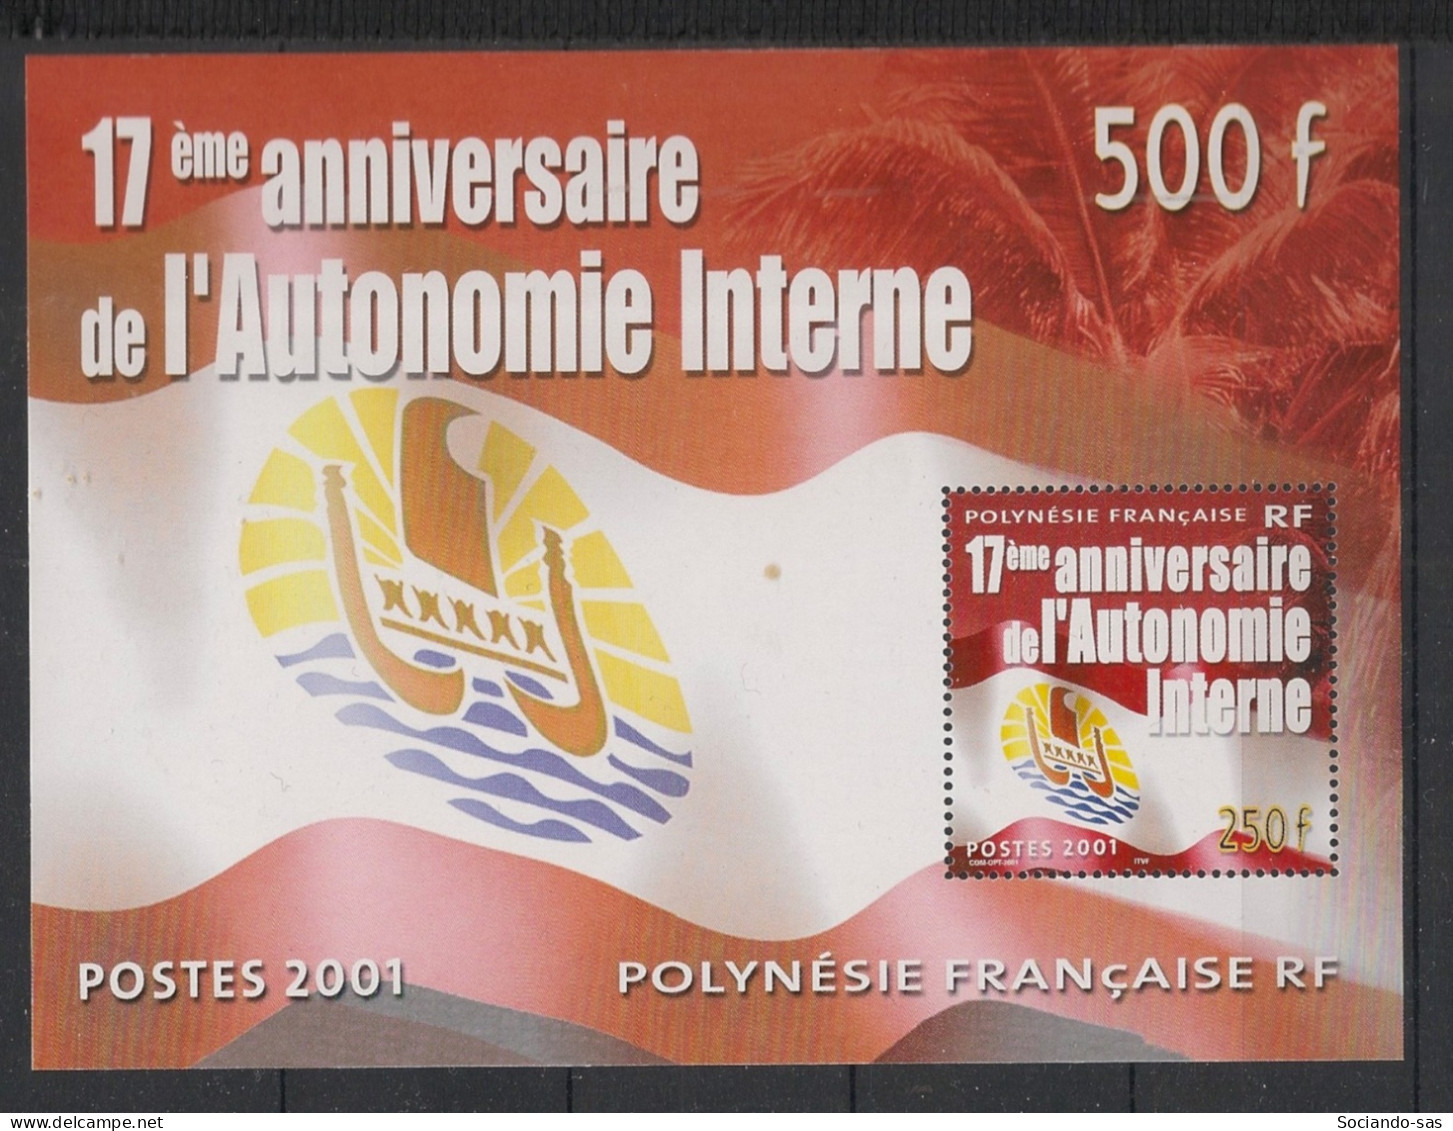 POLYNESIE - 2001 - Bloc Feuillet BF N°YT. 26 - Autonomie Interne - Neuf Luxe** / MNH / Postfrisch - Blocs-feuillets